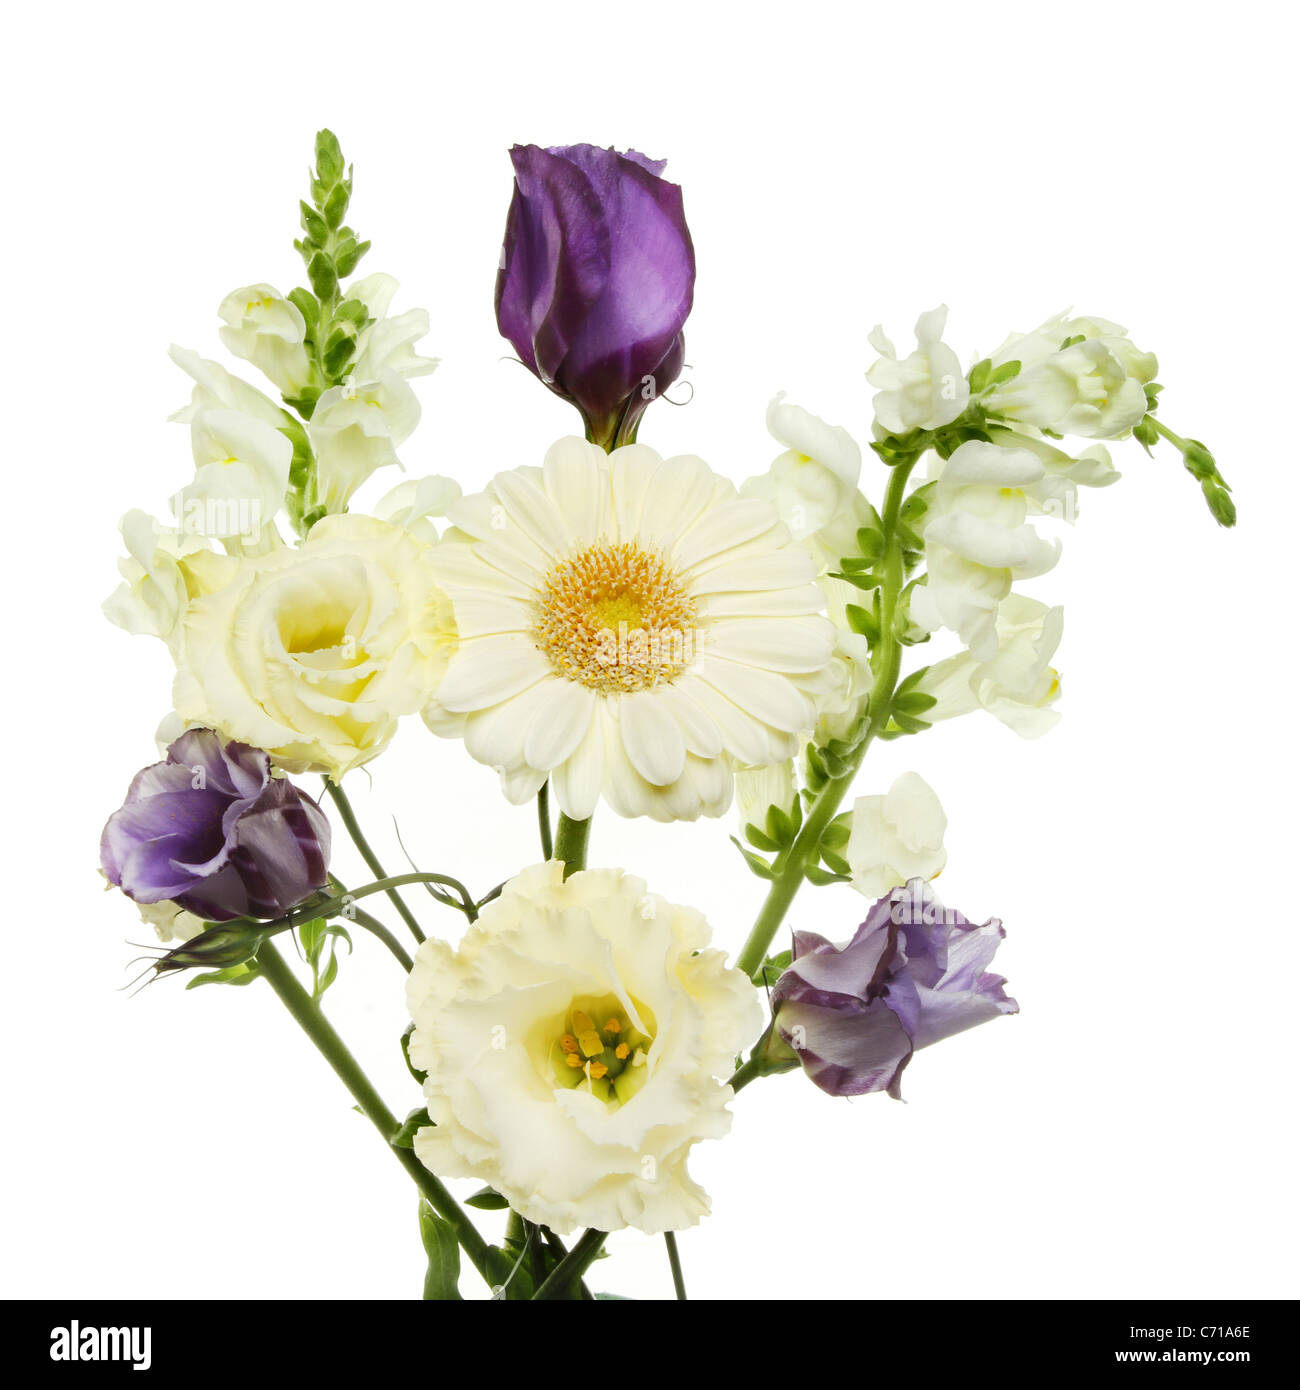 Visualización de color púrpura y flores blancas aisladas contra un blanco Foto de stock